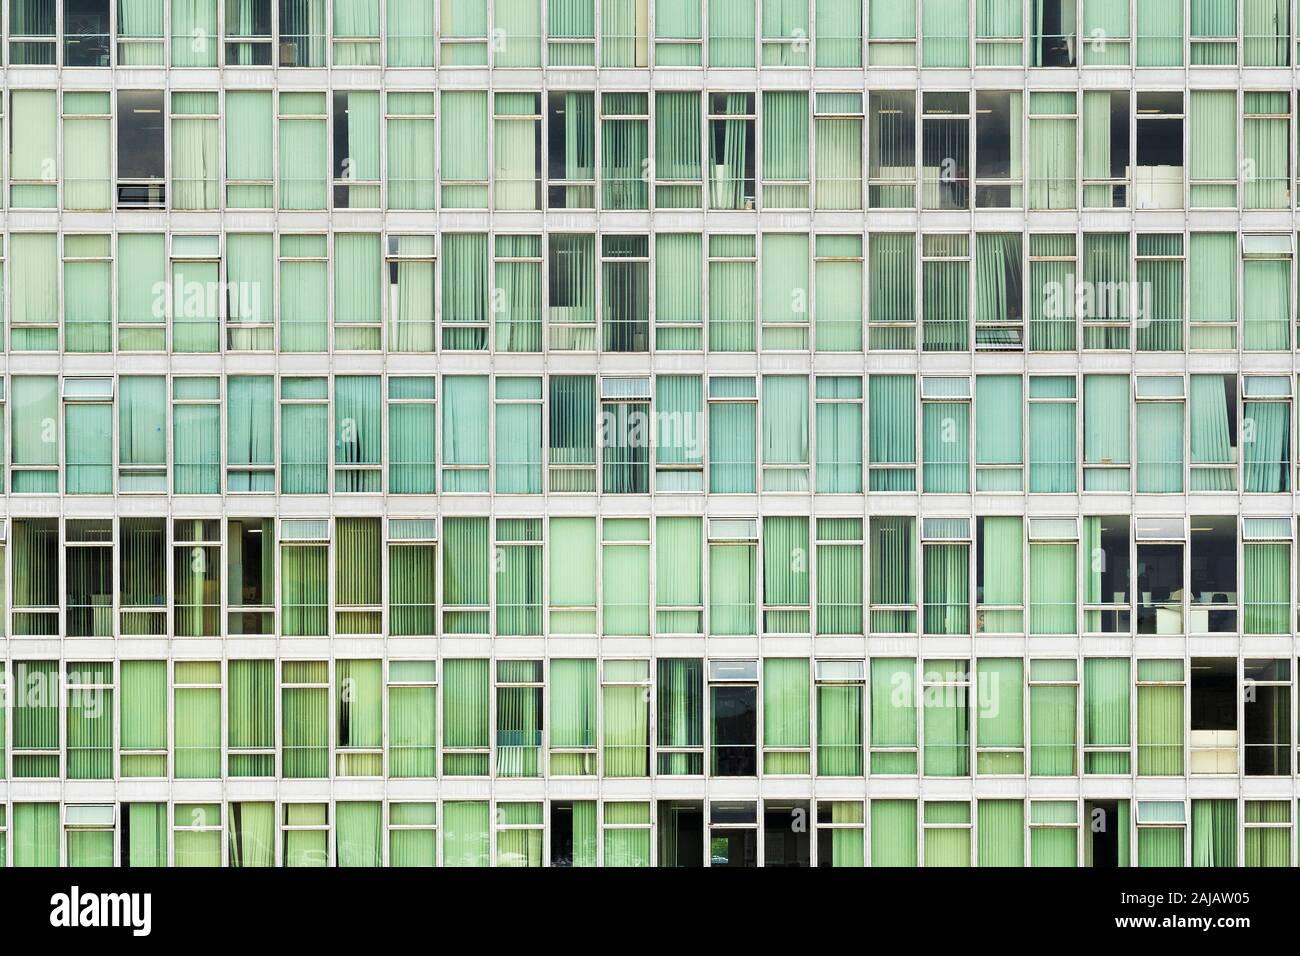 Fachada del edificio del Congreso Nacional de Brasil, en Brasilia, capital del Brasil. Antecedentes de la arquitectura urbana moderna. Foto de stock